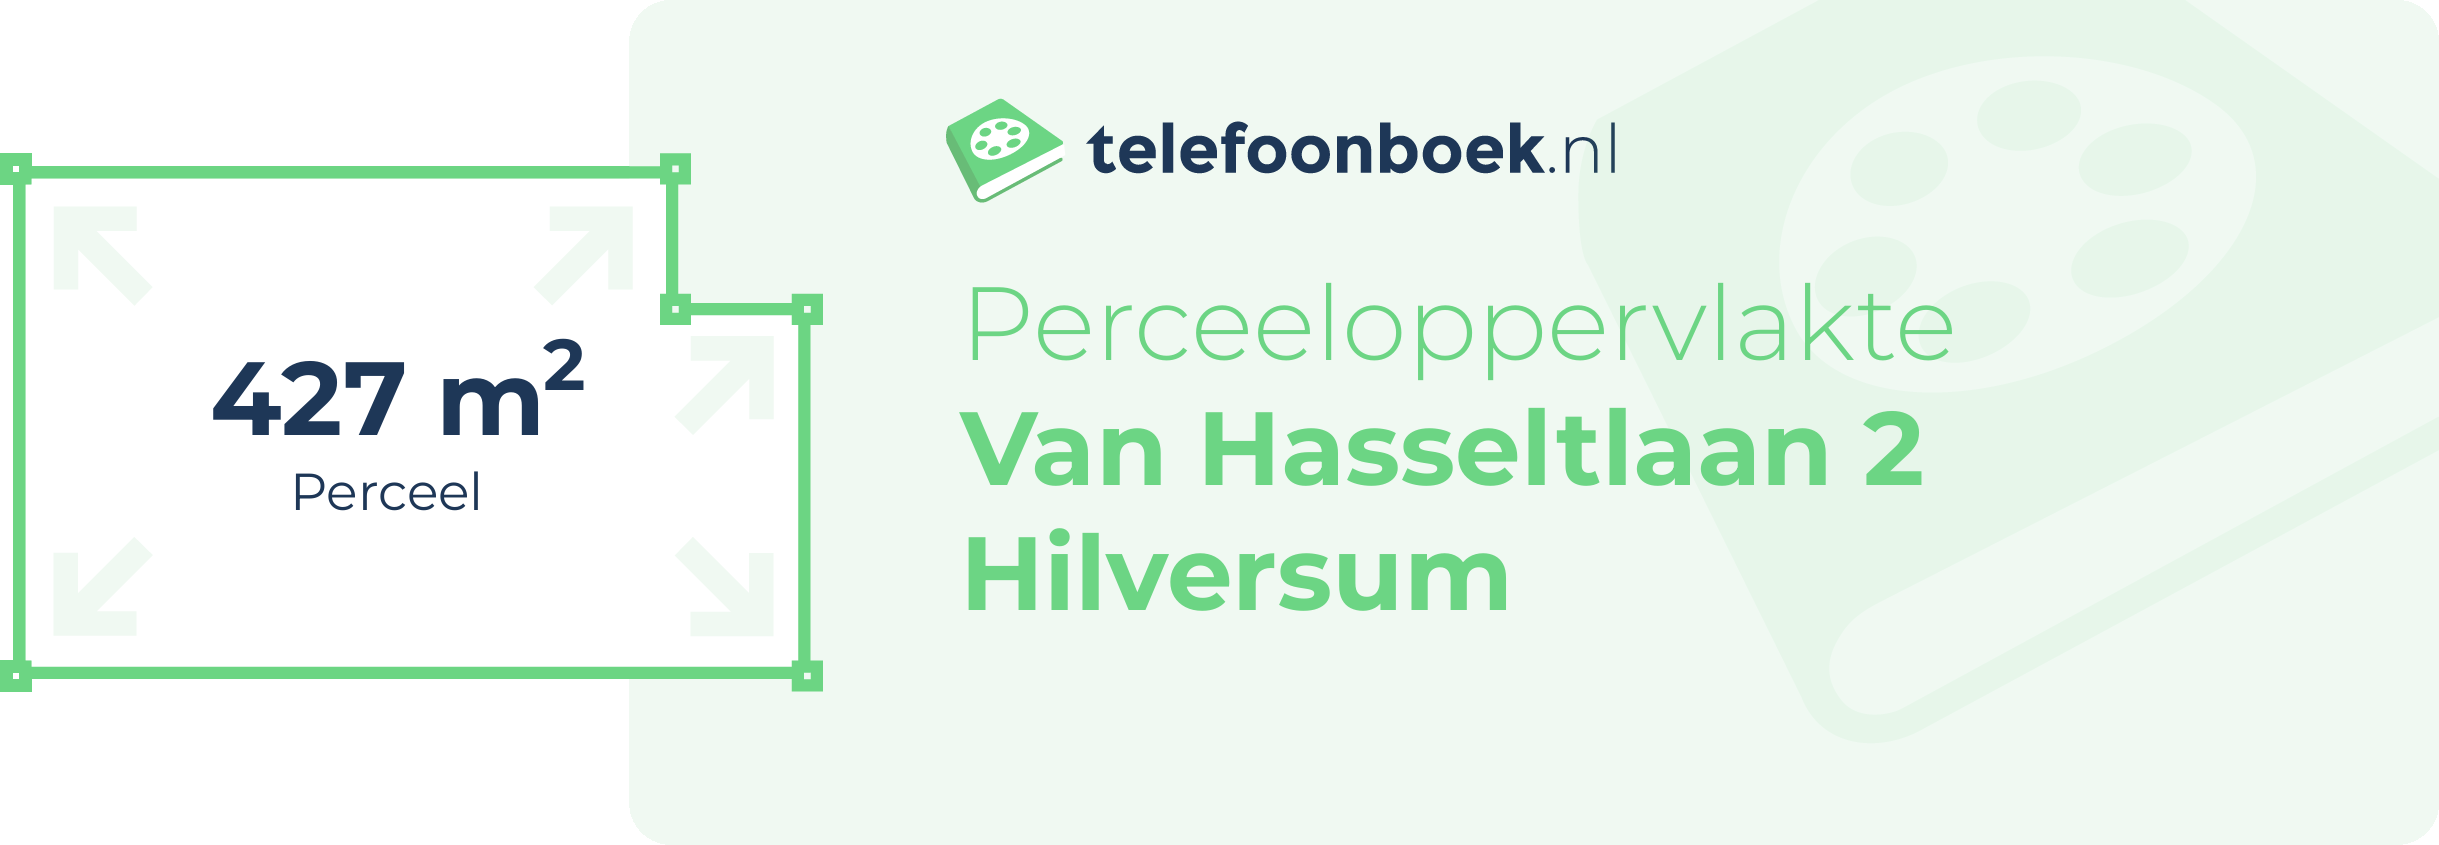 Perceeloppervlakte Van Hasseltlaan 2 Hilversum